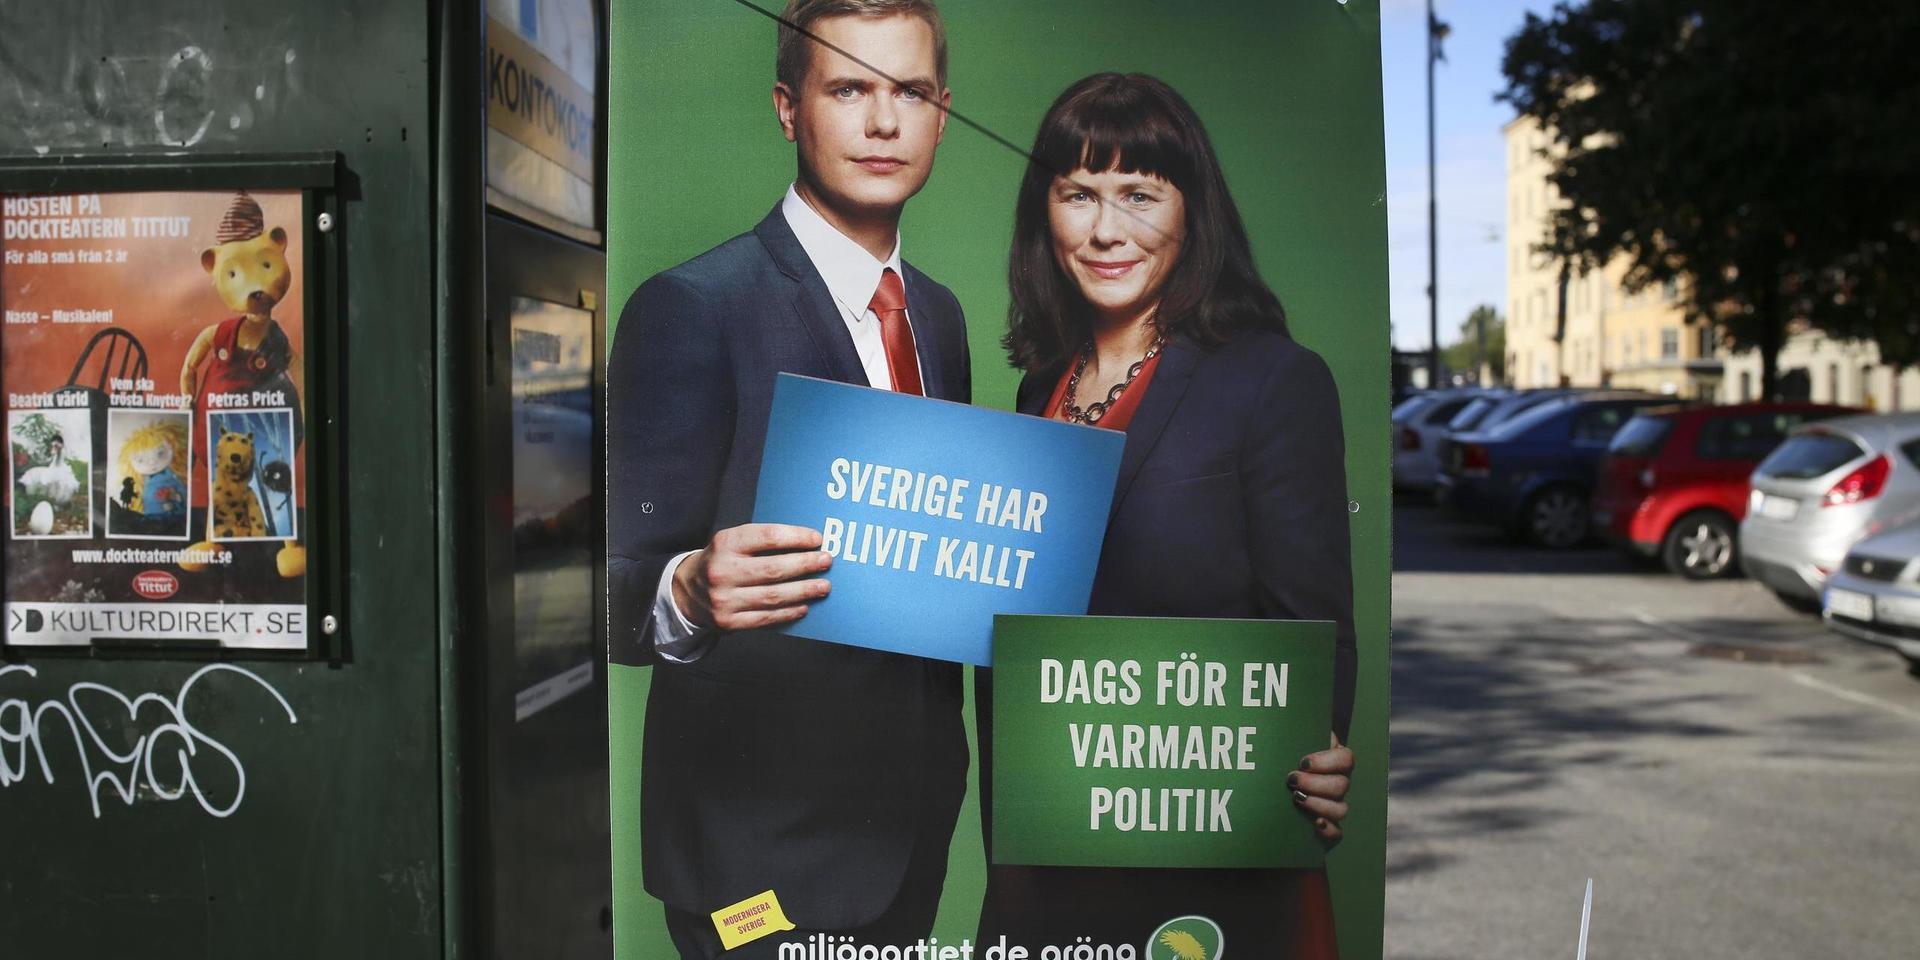 Miljöpartiets känslostyrda inställning fick dominera svensk migrationspolitik under 2010-talet. Det vore olyckligt om vi återvände dit.  